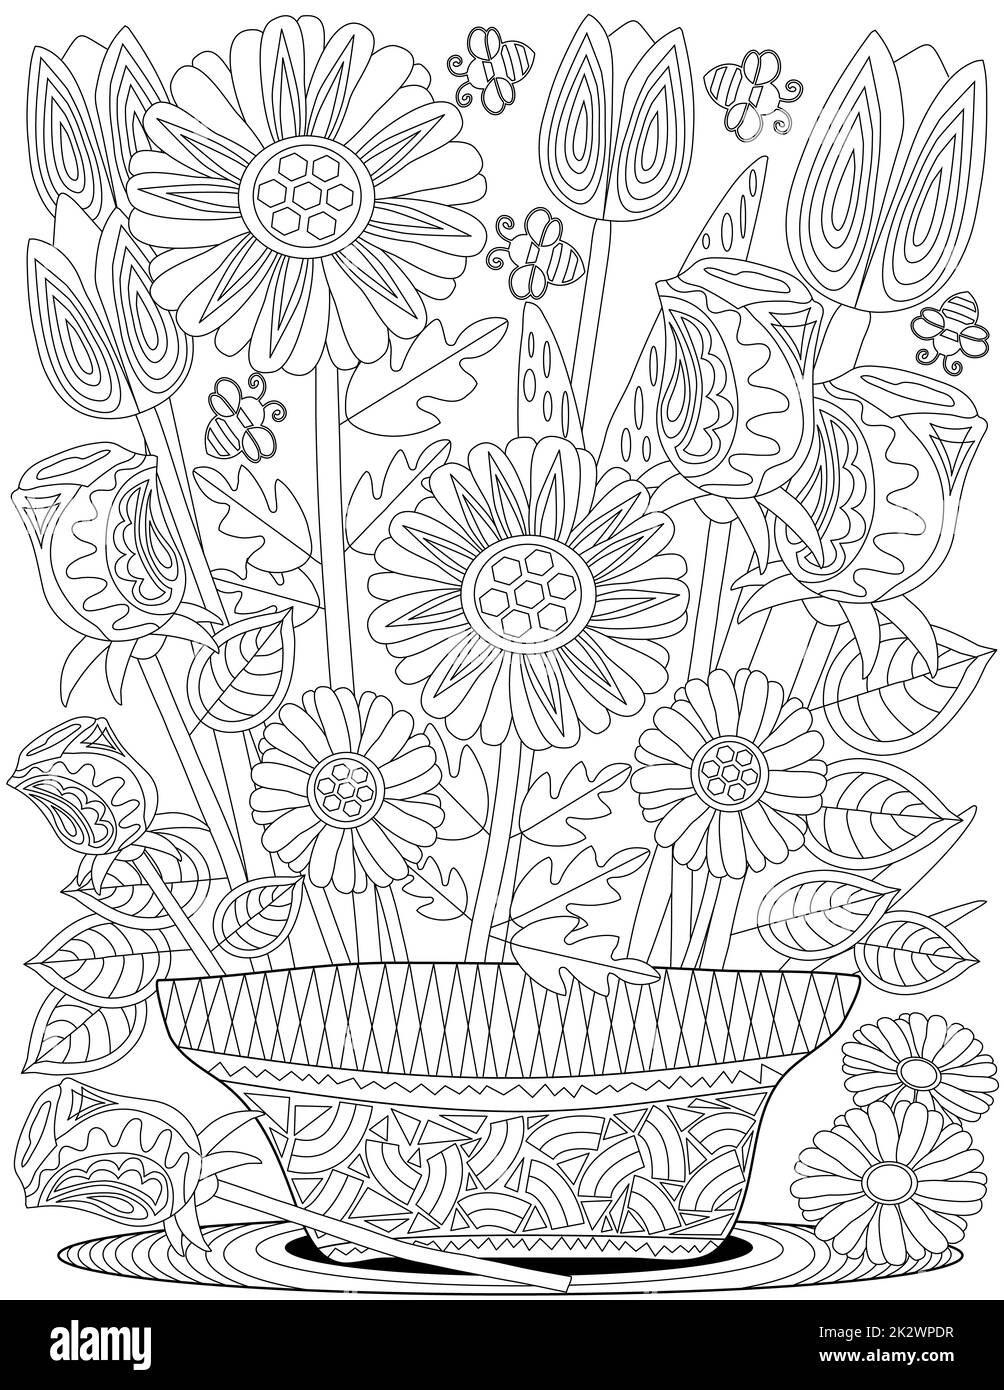 Pot de fleur cartoon Banque d'images noir et blanc - Alamy